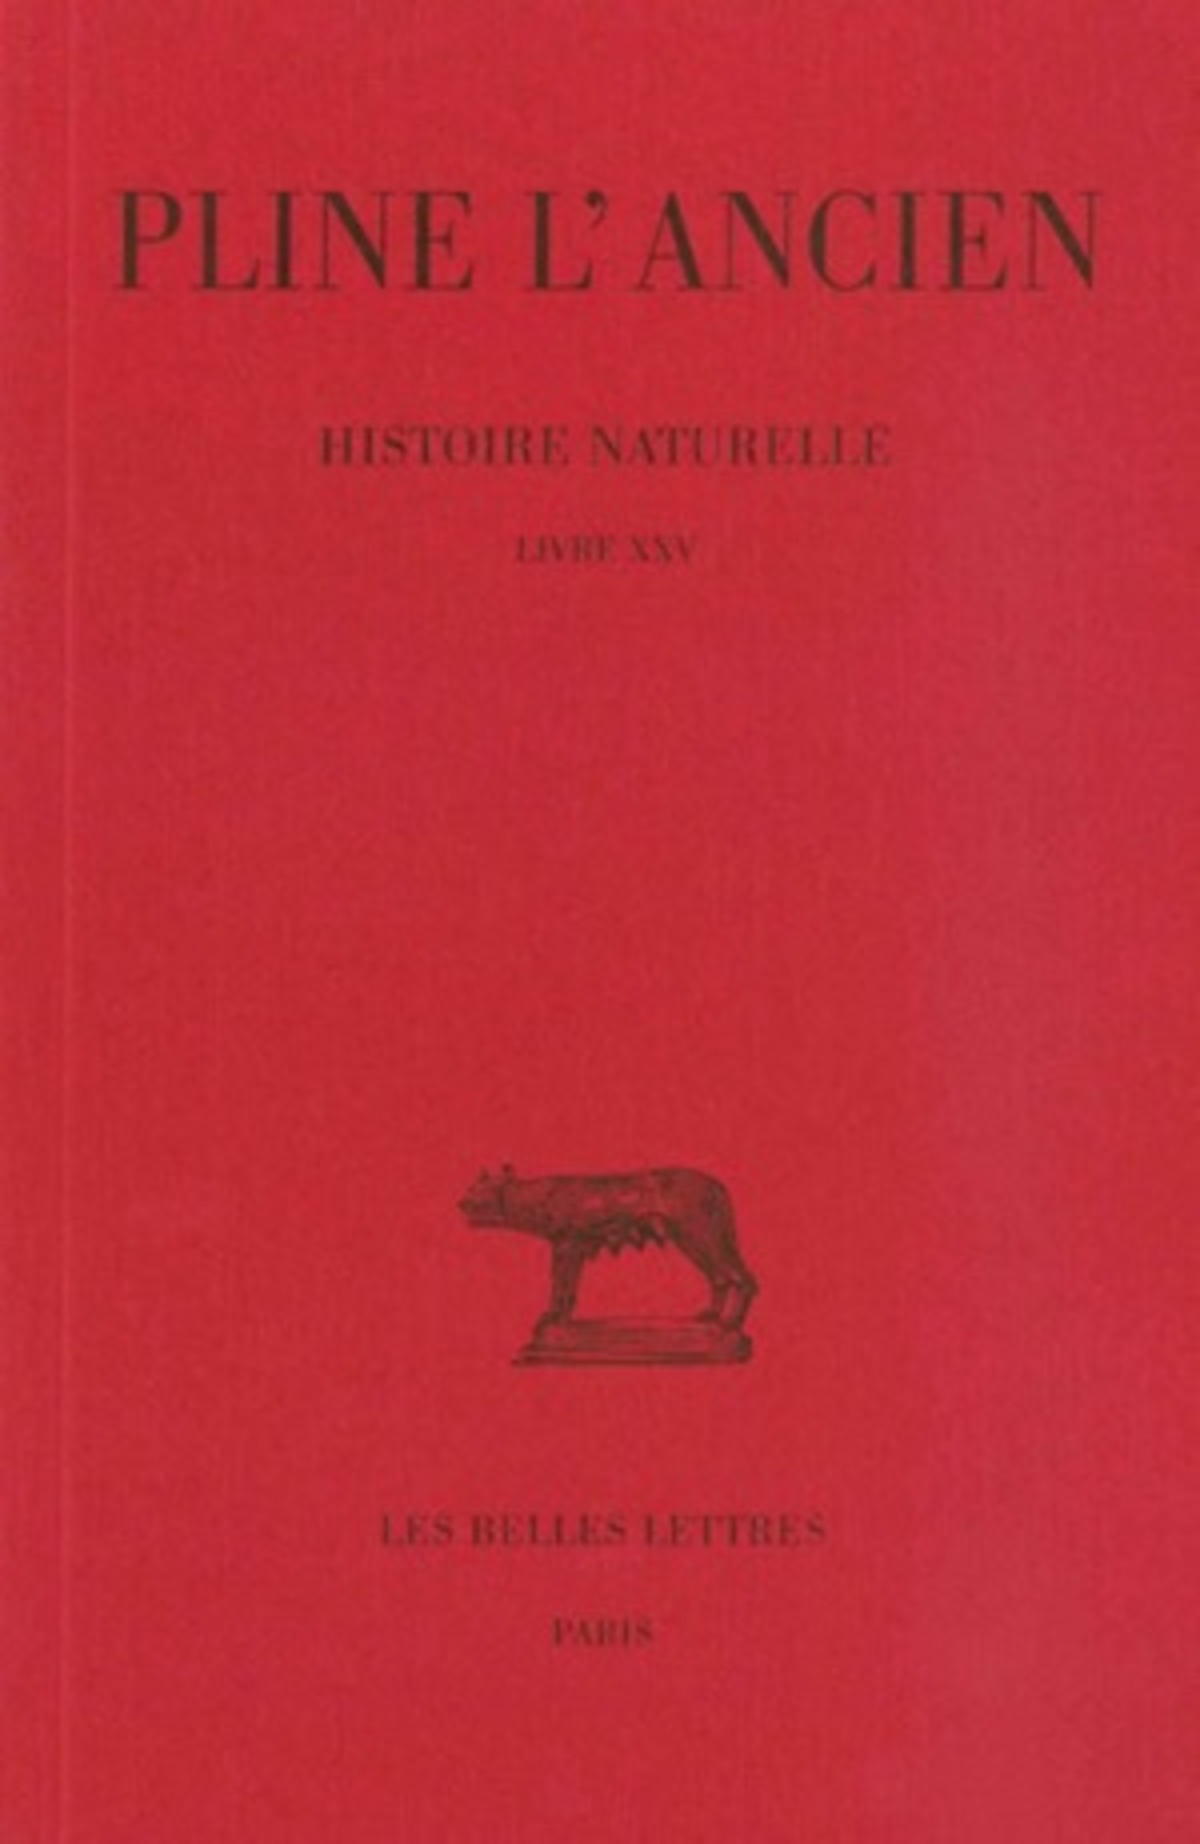 Histoire naturelle. Livre XXV